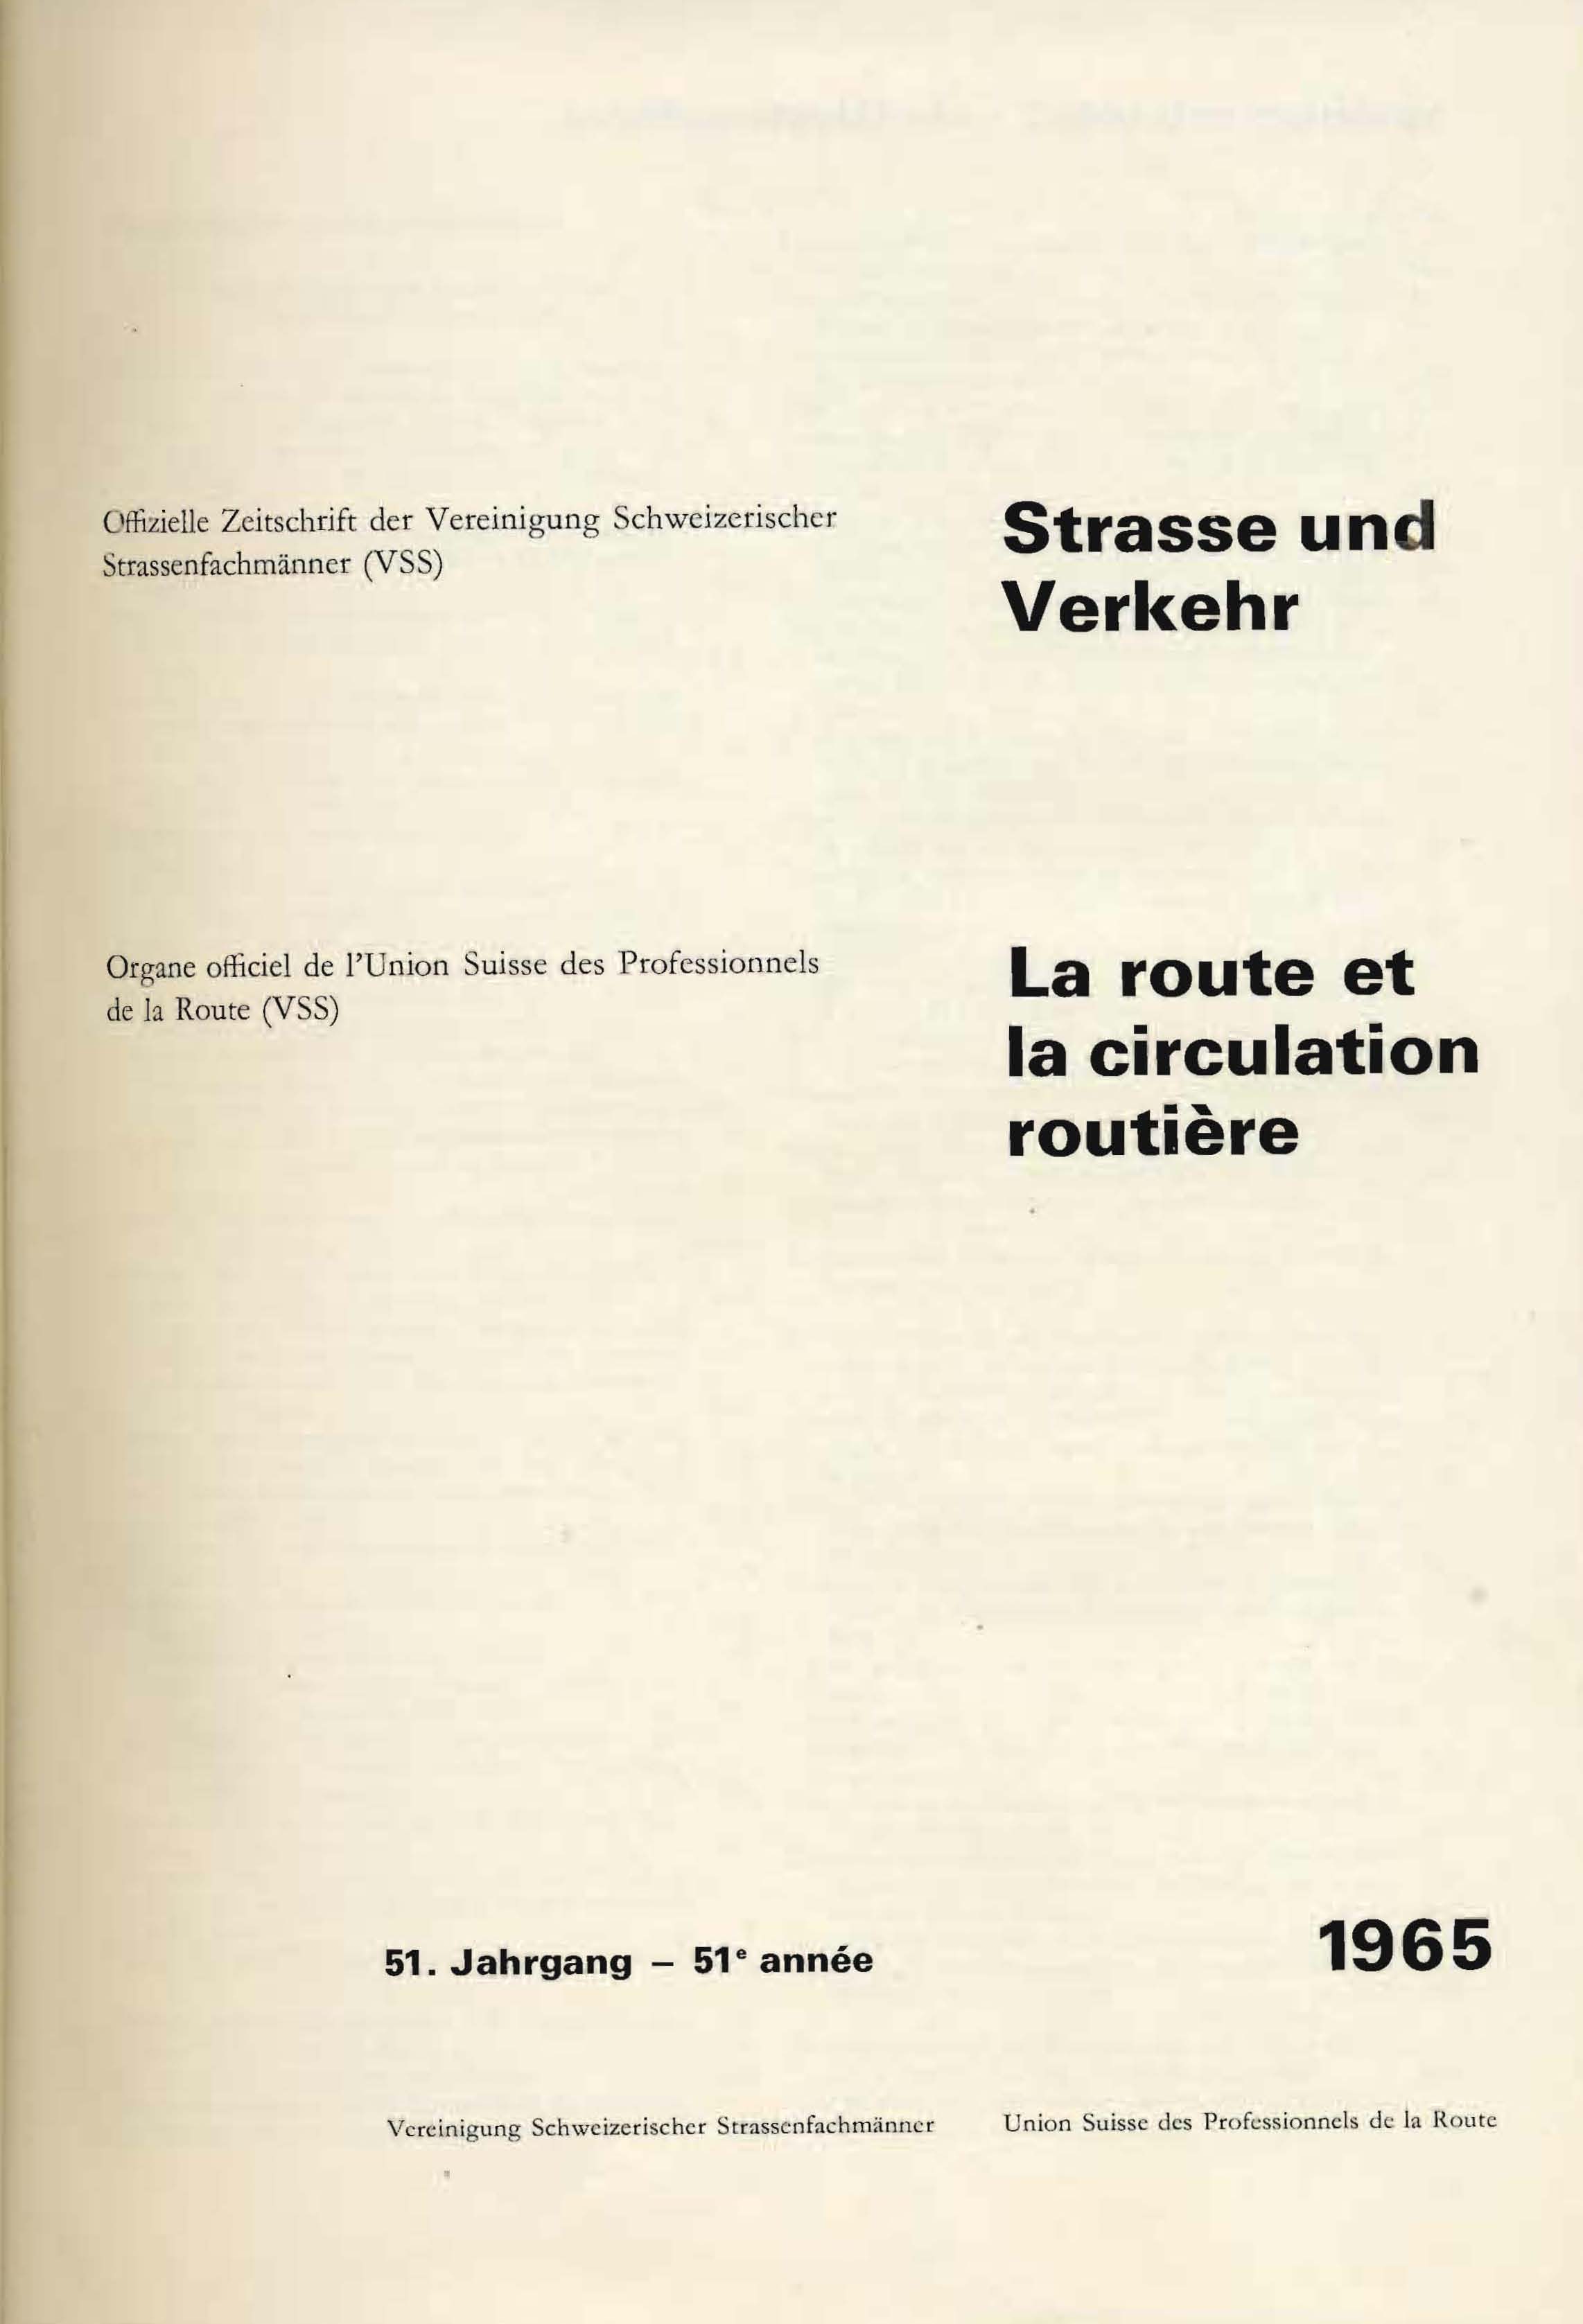 Strasse und Verkehr, 51. Jahrgang 1965